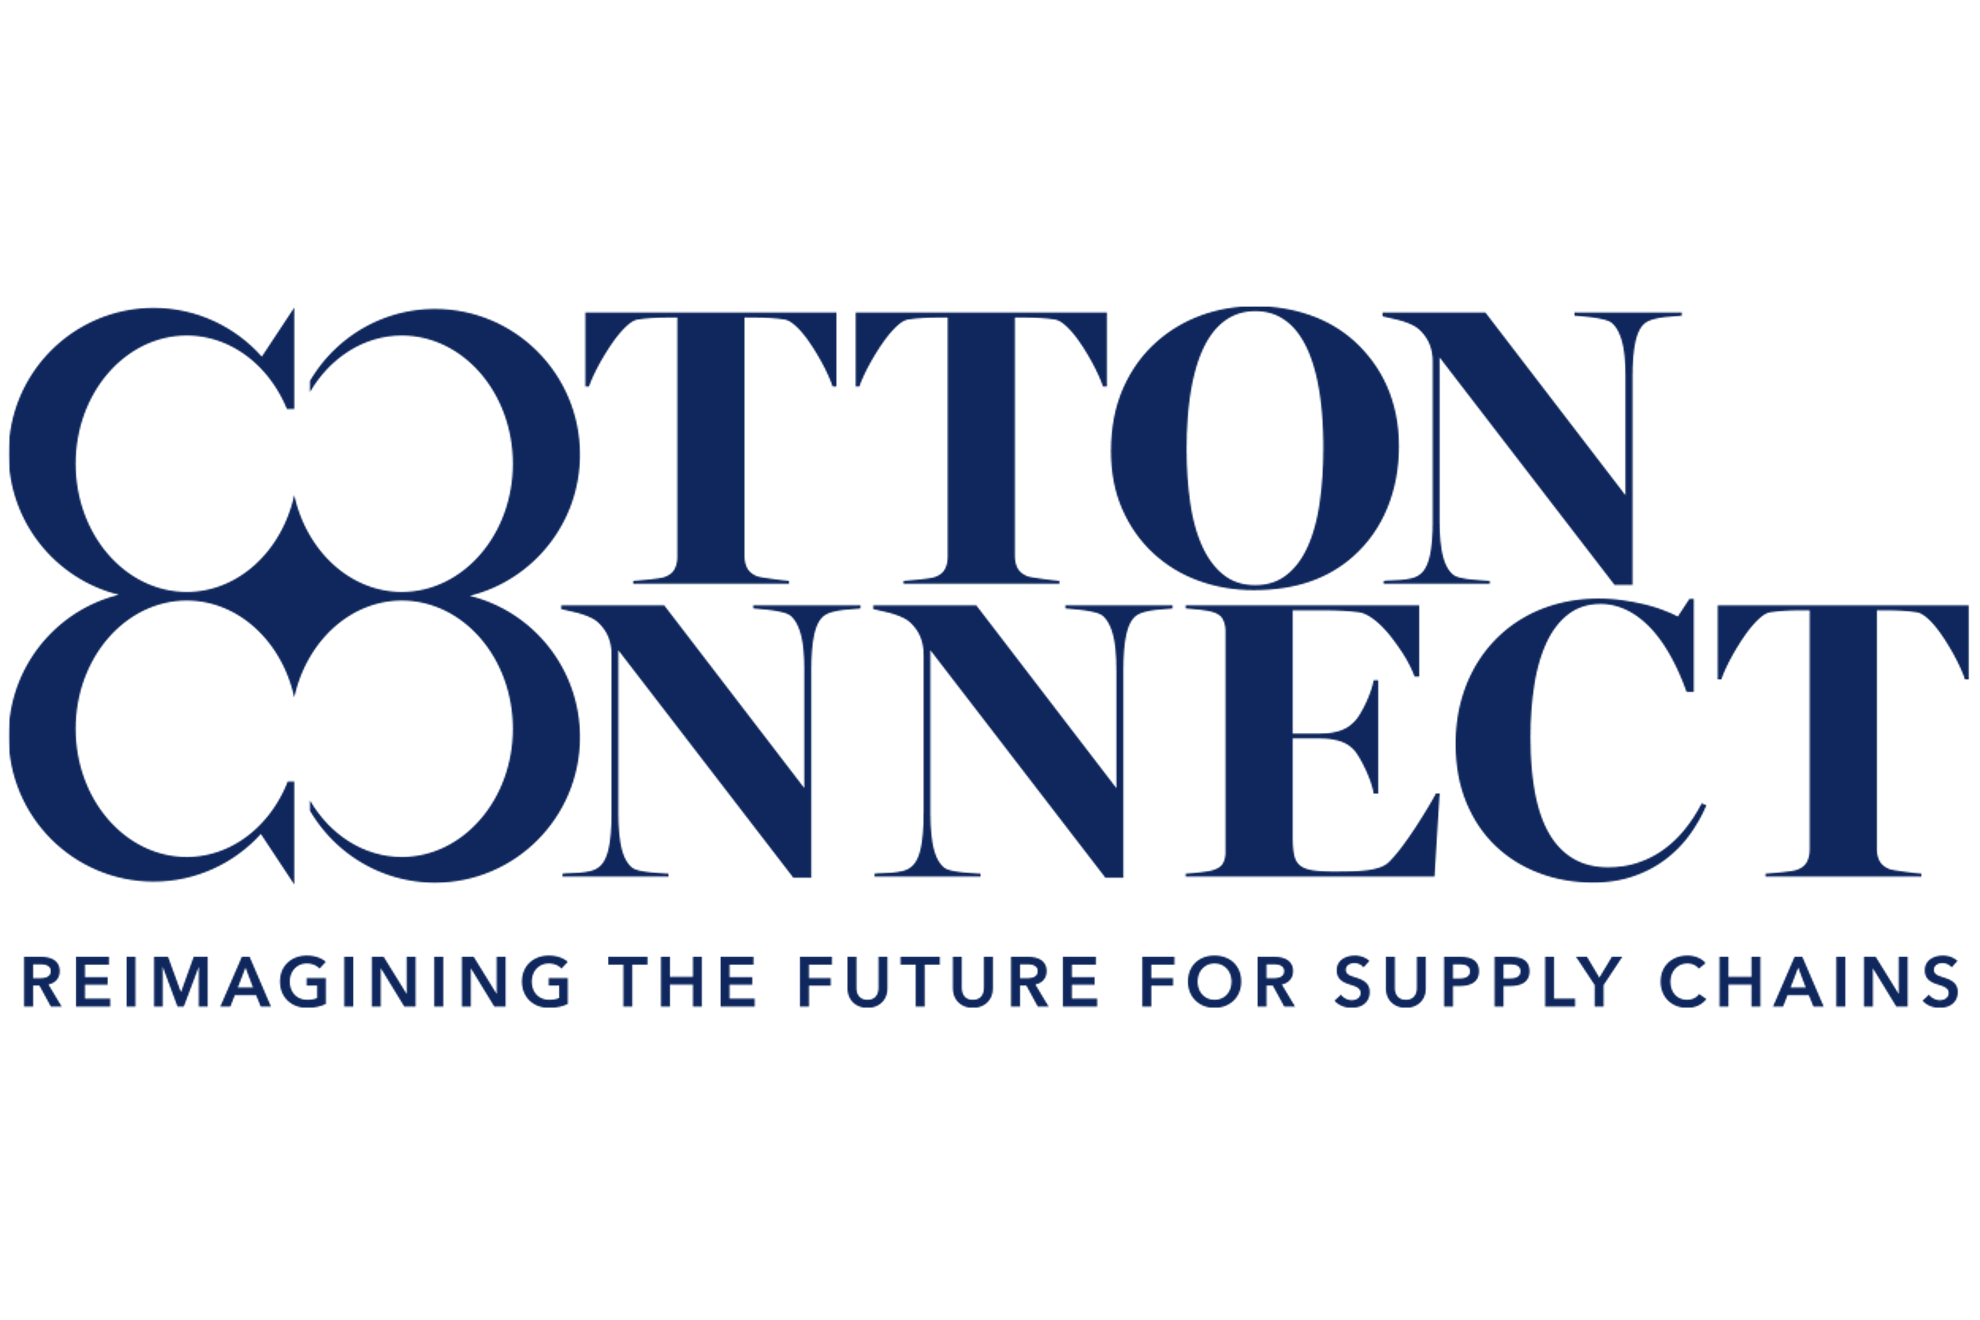 CottonConnect logo